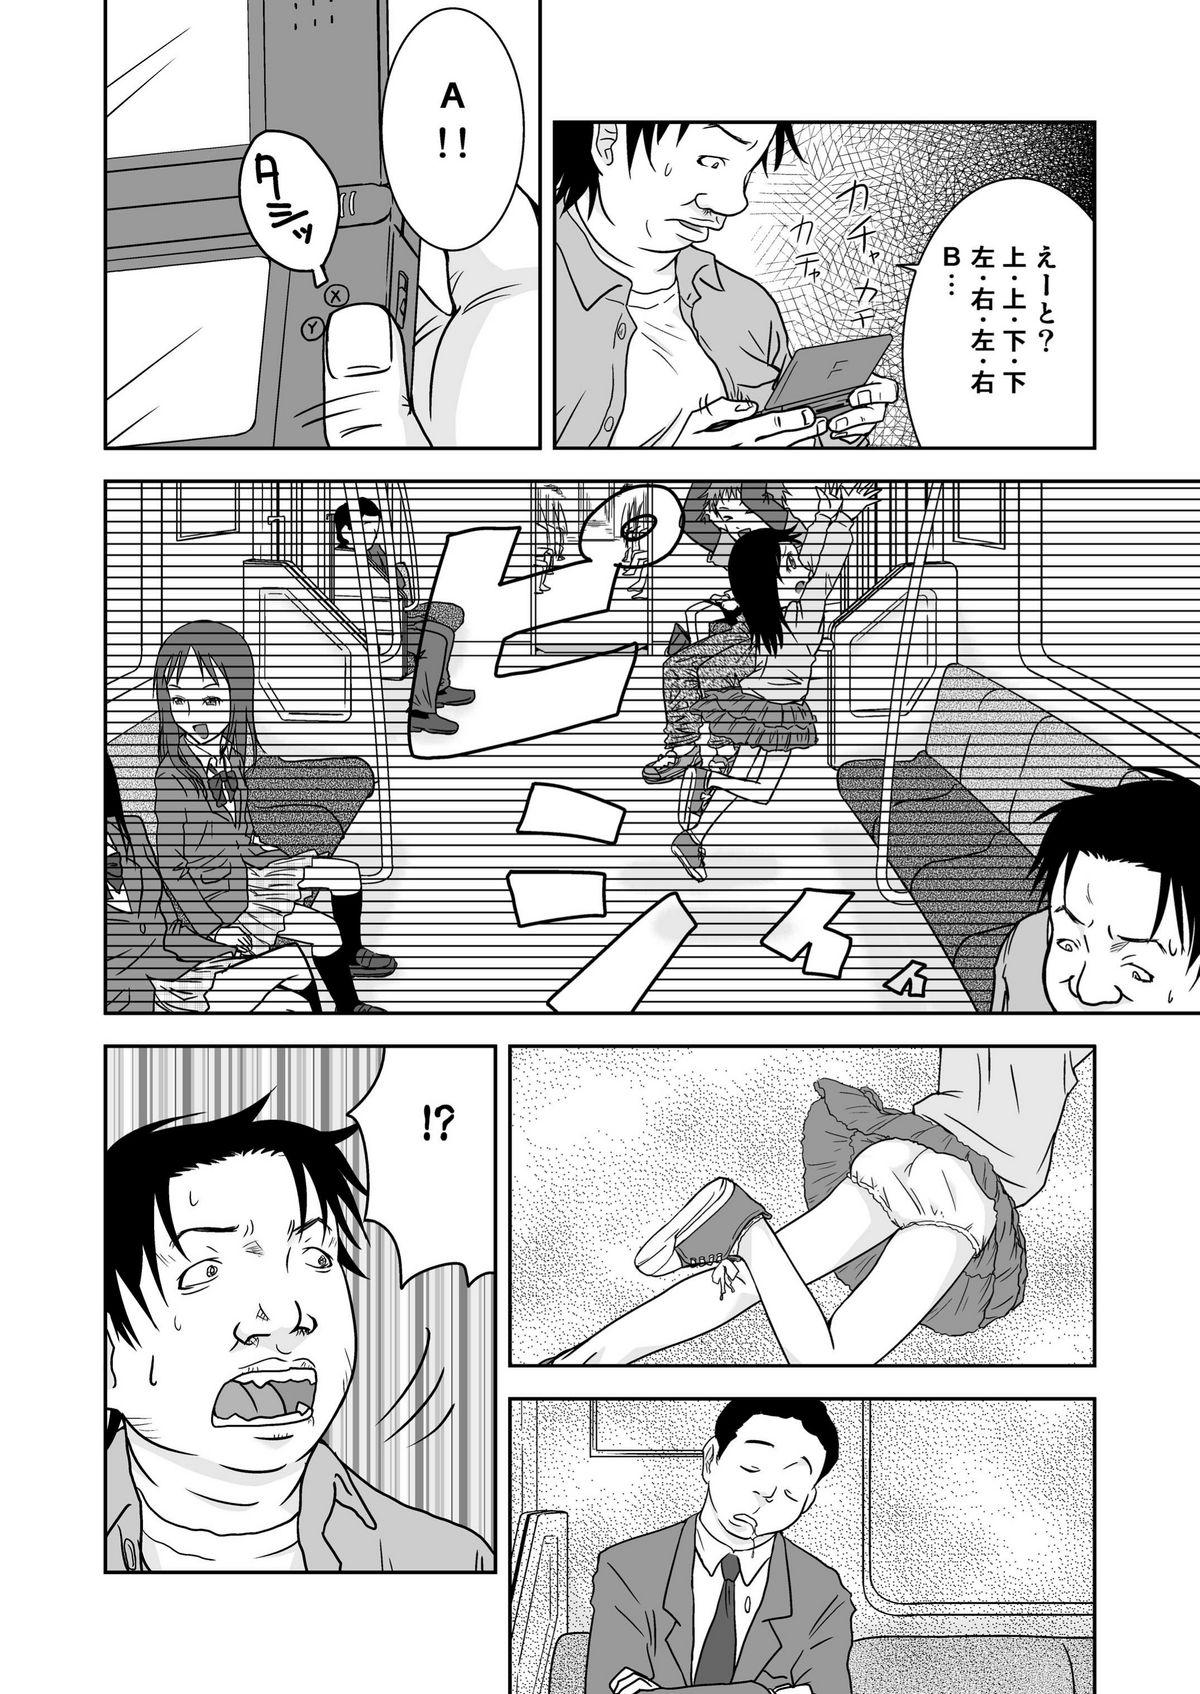 Small Boobs Moshimo Jikan ga Tomattara!? 3 Byou Porn Star - Page 6